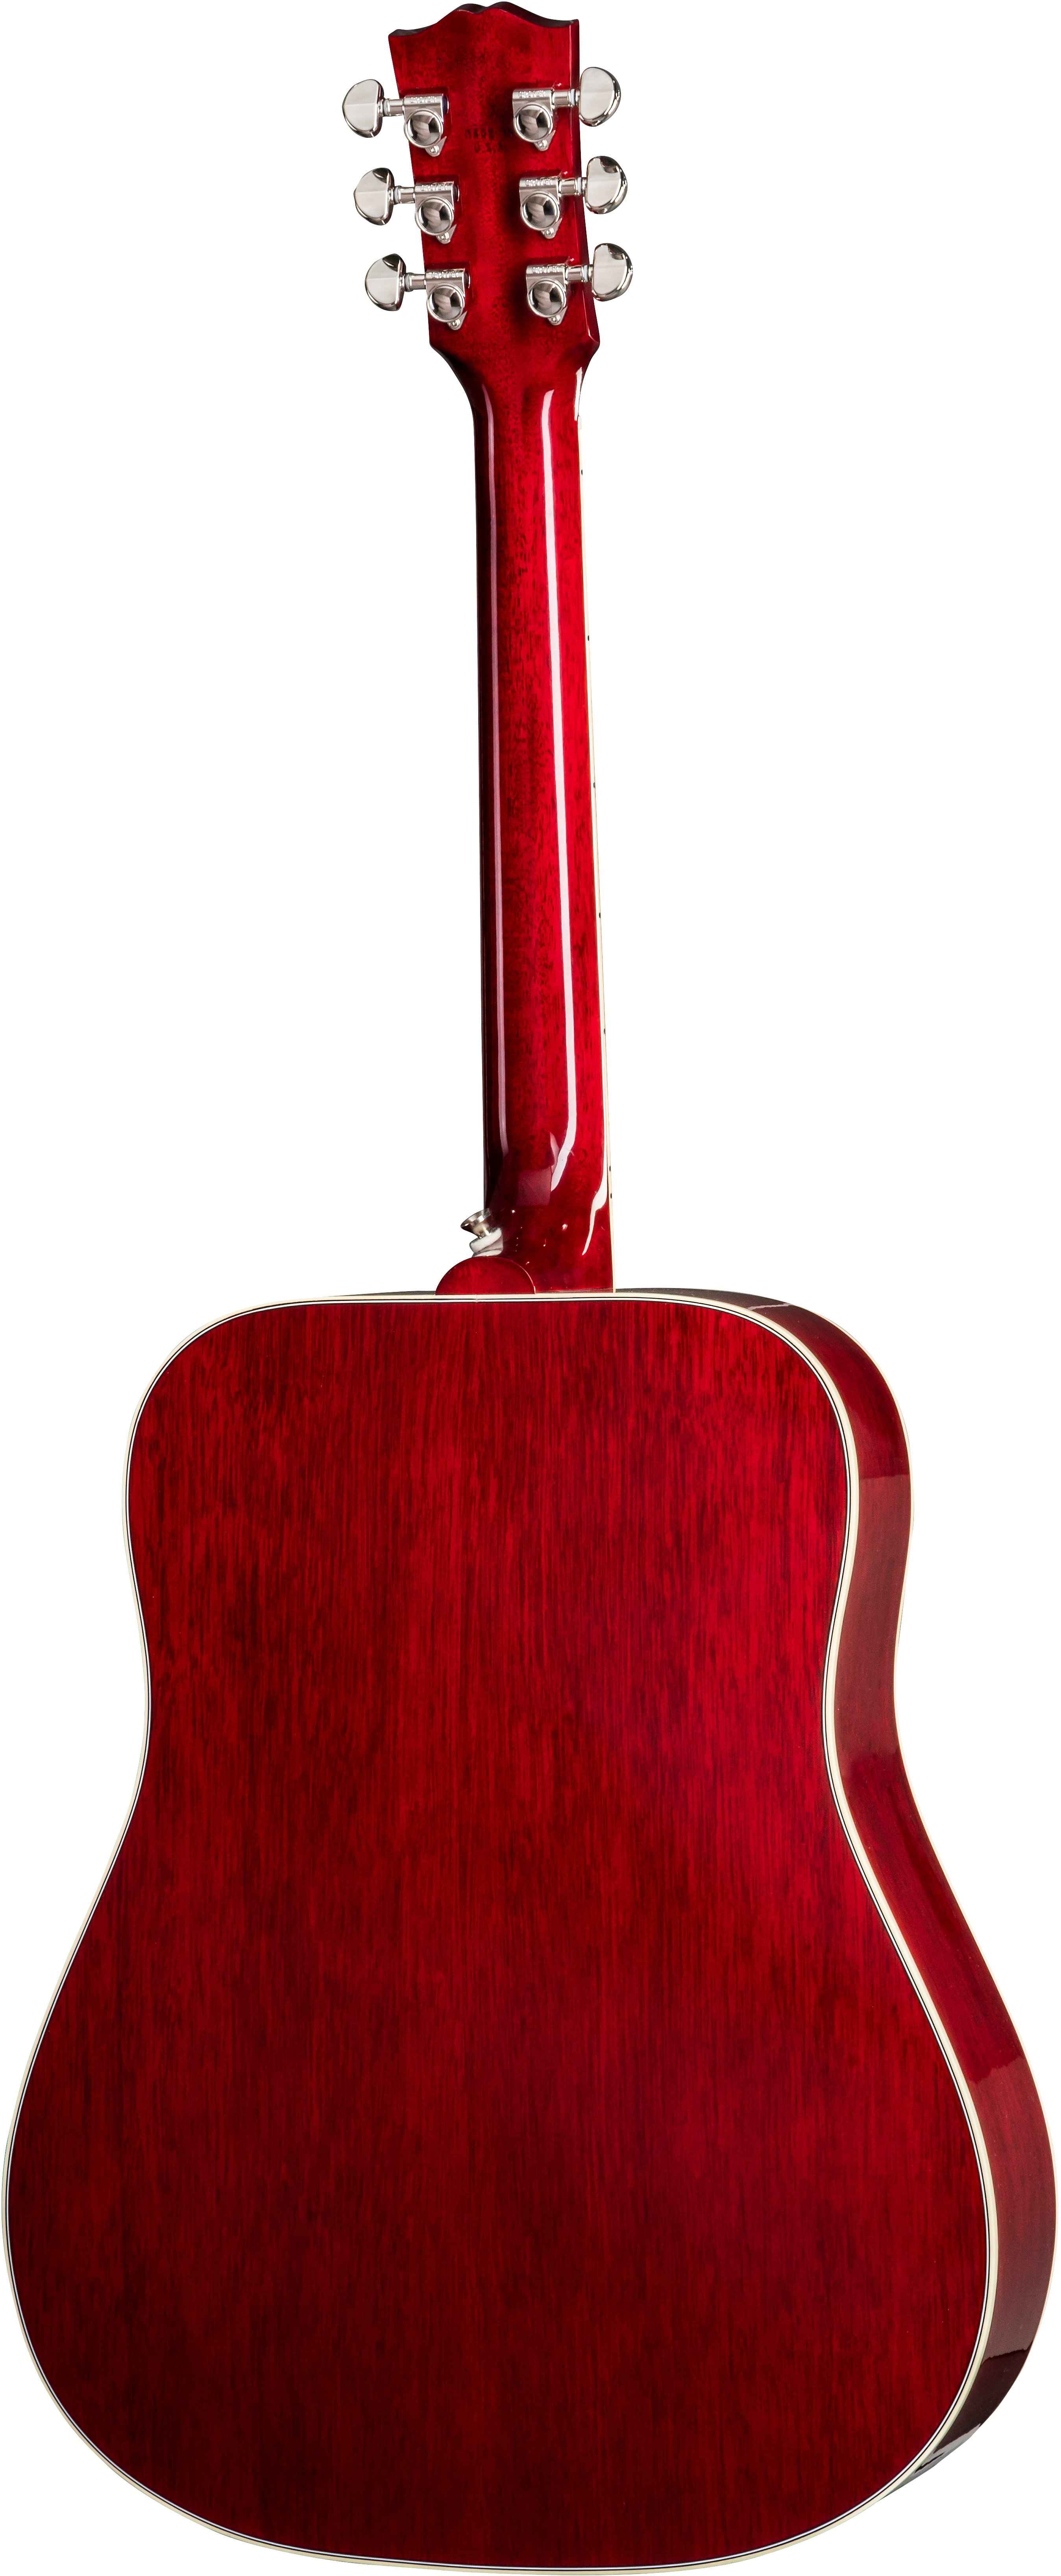 Gibson Hummingbird 2019 Dreadnought Epicea Acajou Rw - Vintage Cherry Sunburst - Westerngitarre & electro - Variation 1